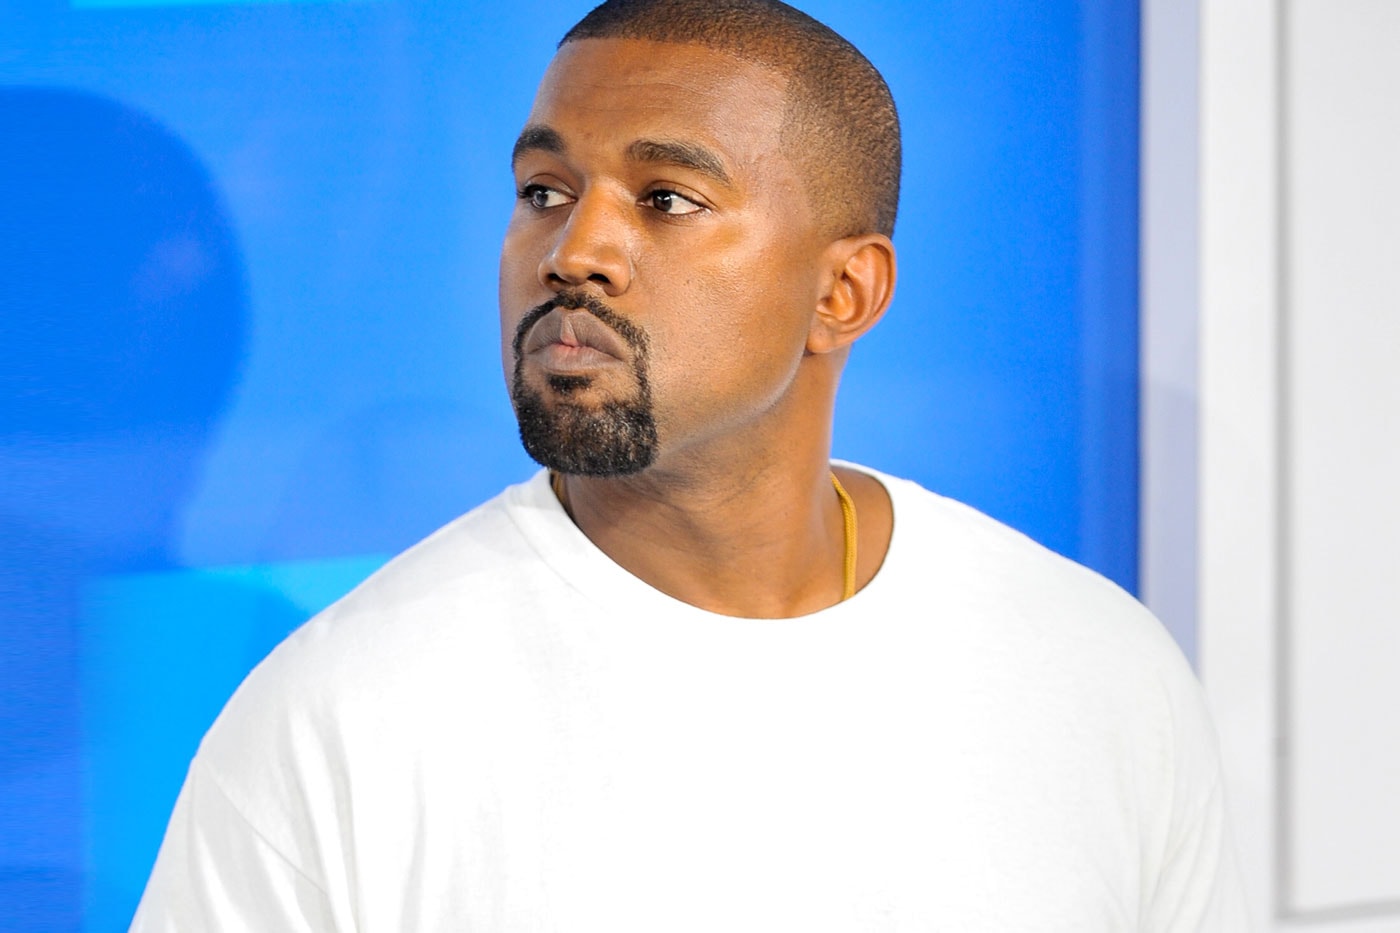 Kanye West Shares 'Yeezy Season 2' Short Film